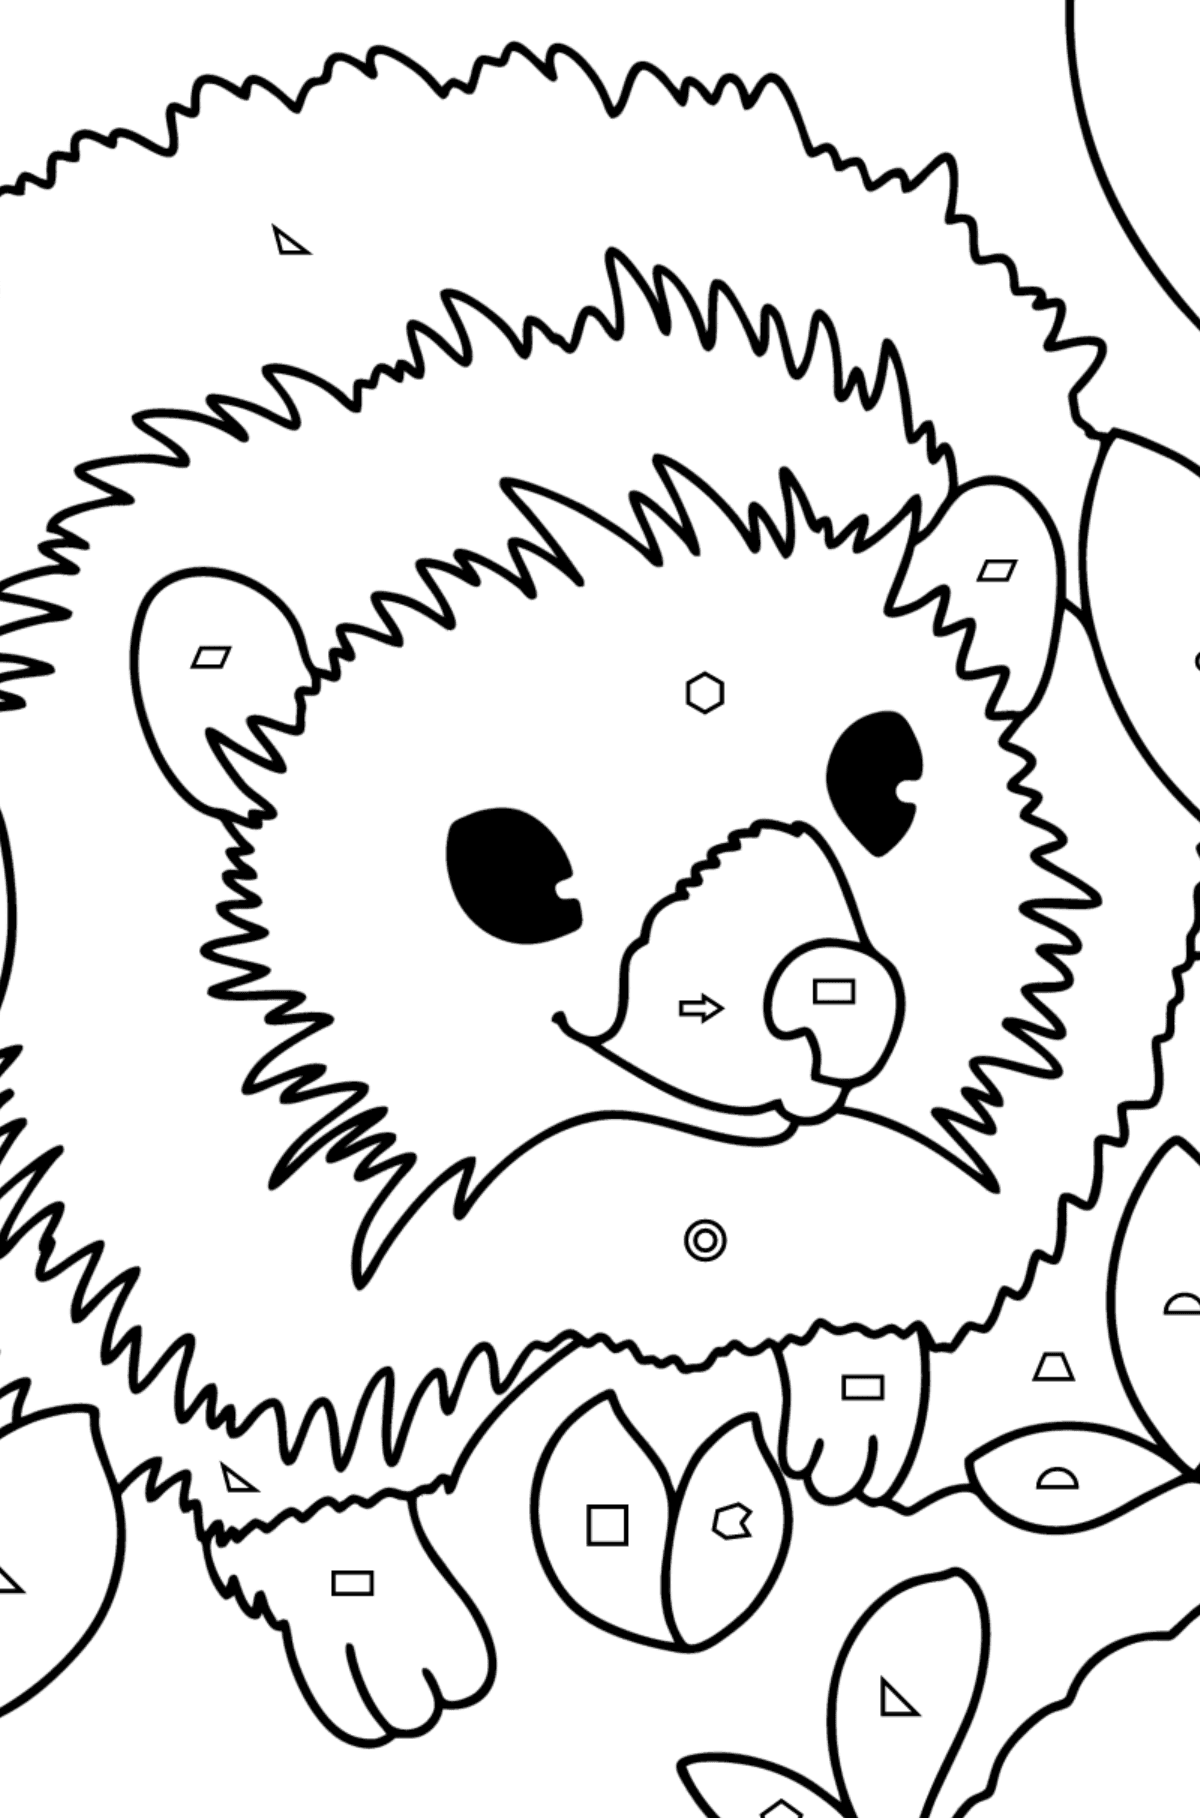 Ormandaki kirpi boyama sayfası - Geometrik Şekillerle Boyama çocuklar için